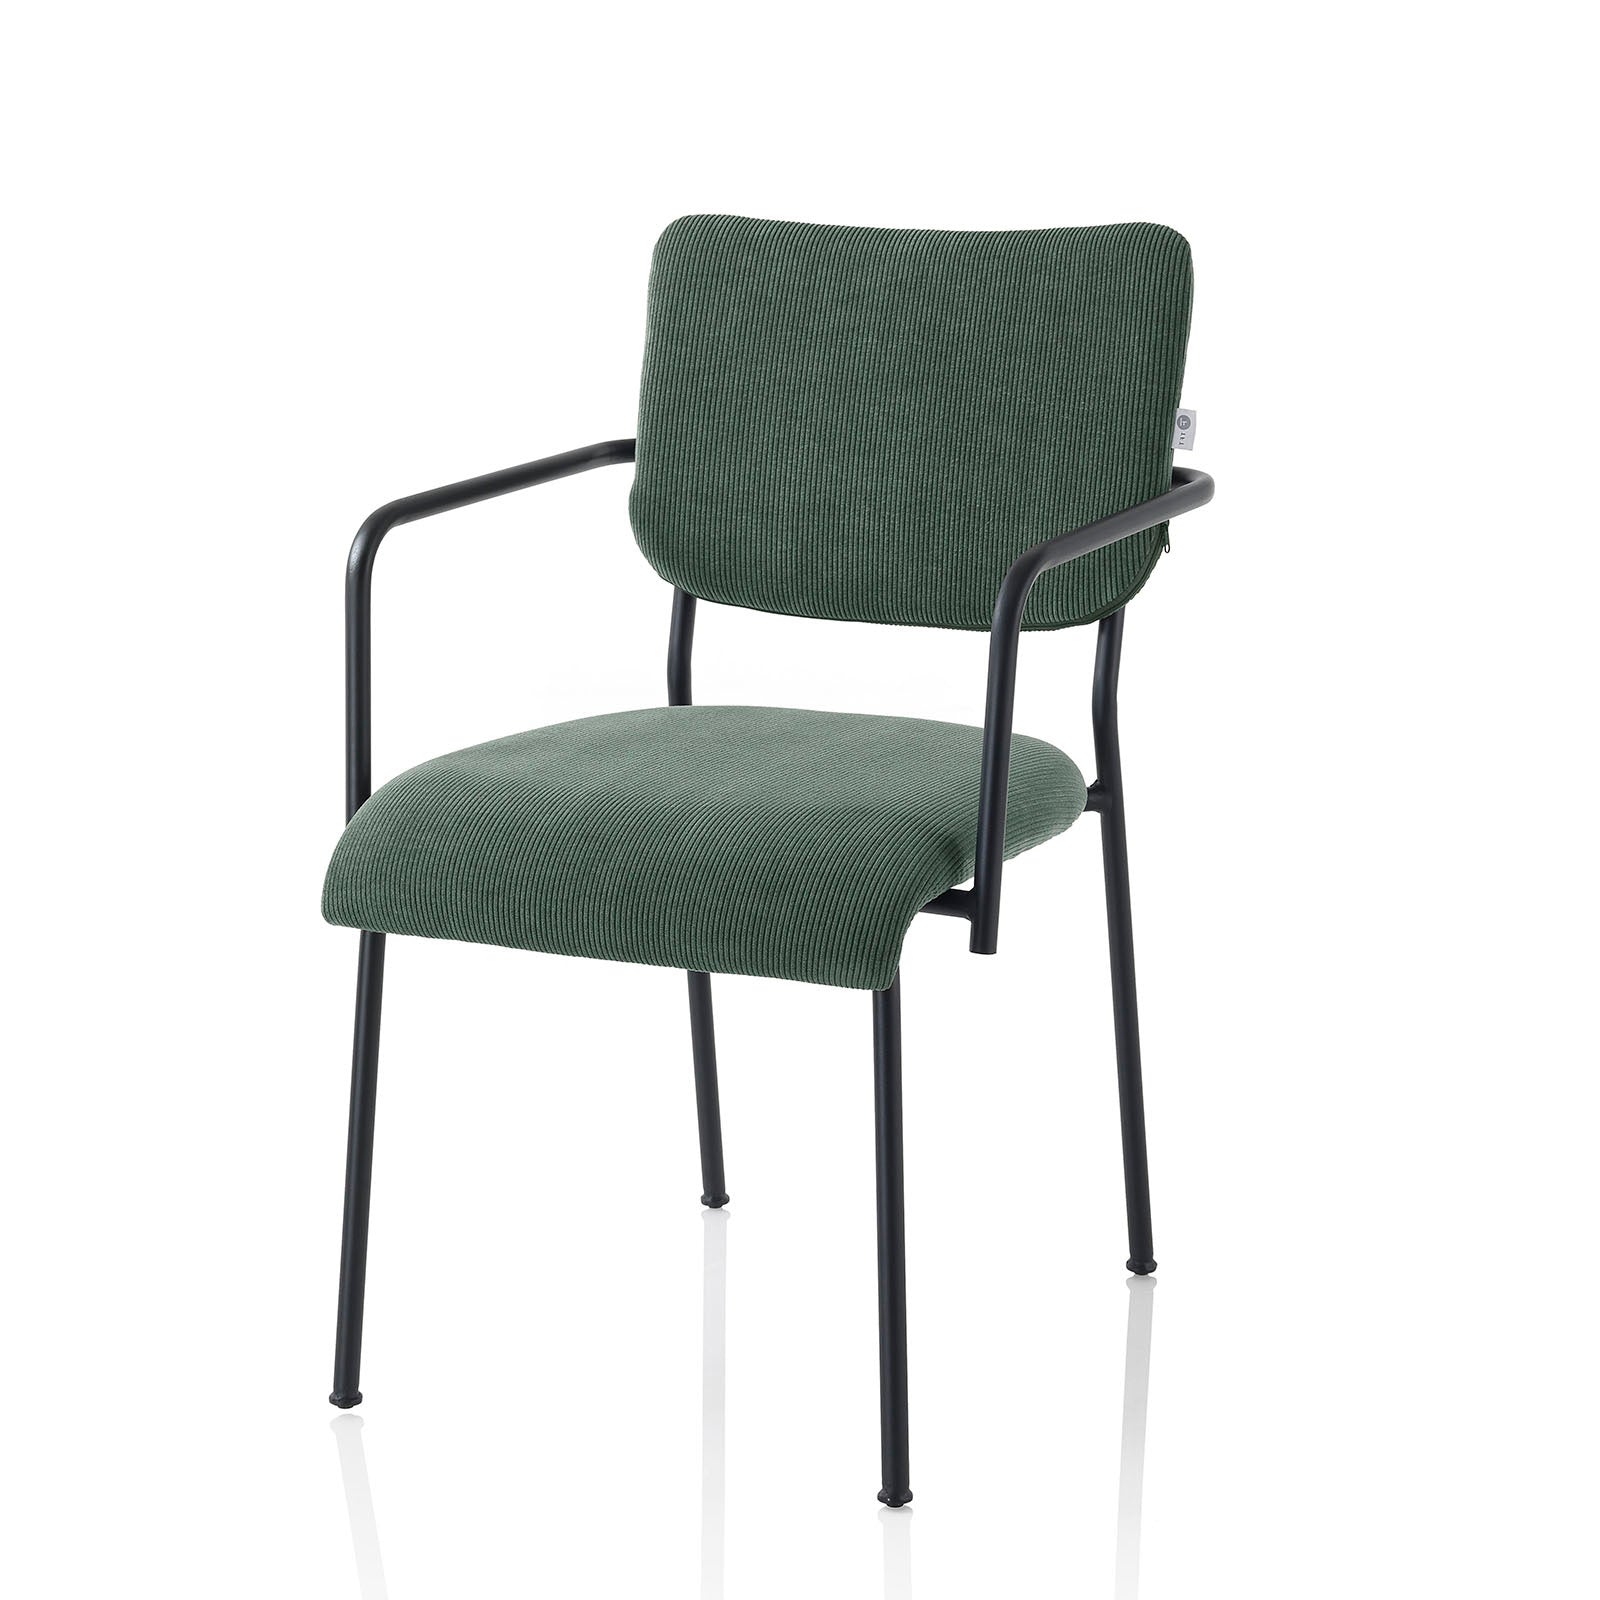 Conjunto de 2 sillas MEG con reposabrazos en metal y terciopelo.